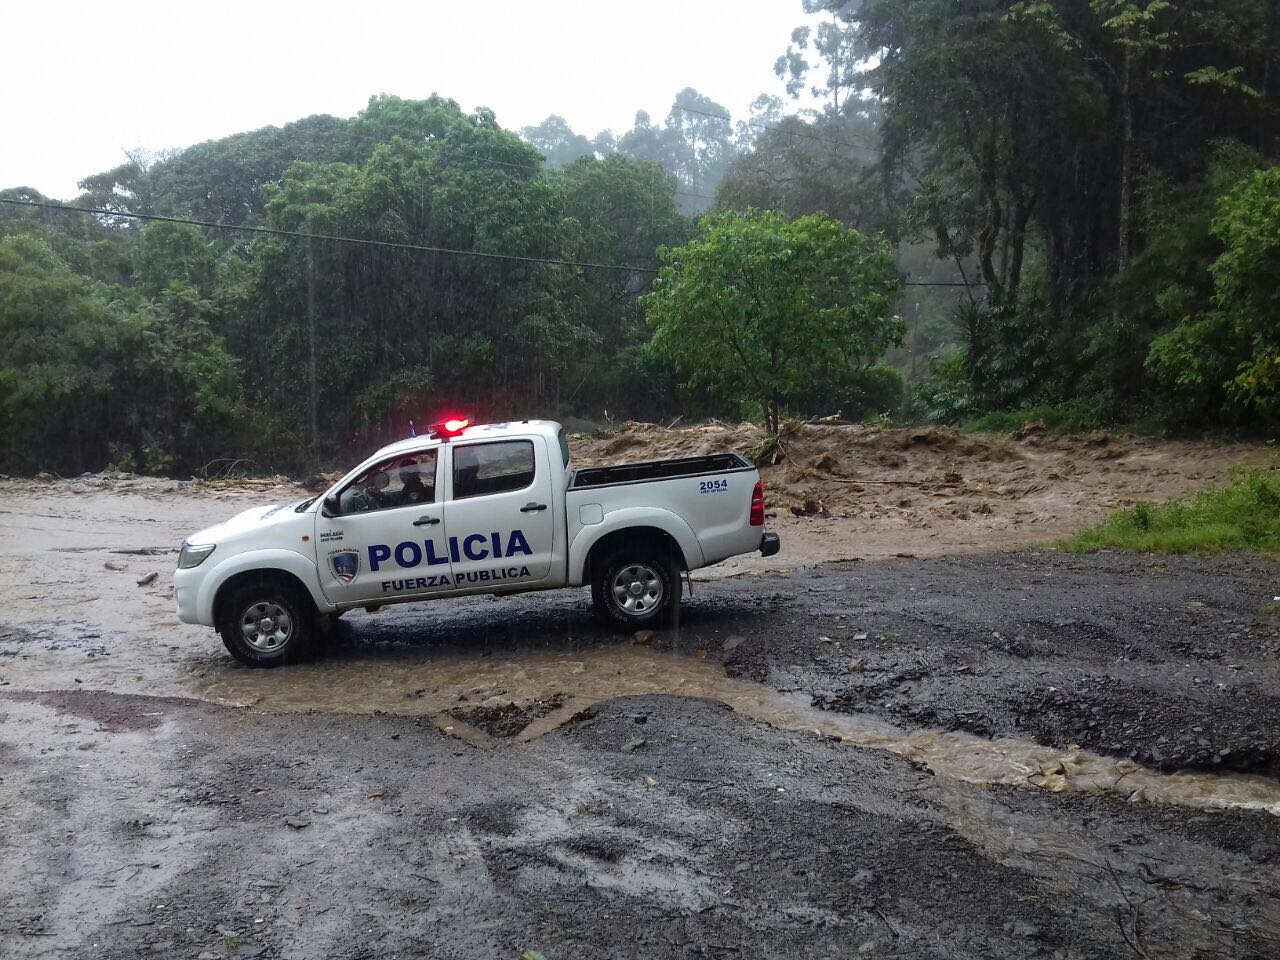 Ascienden a seis los muertos causados por la tormenta Nate en Costa Rica (Fotos)